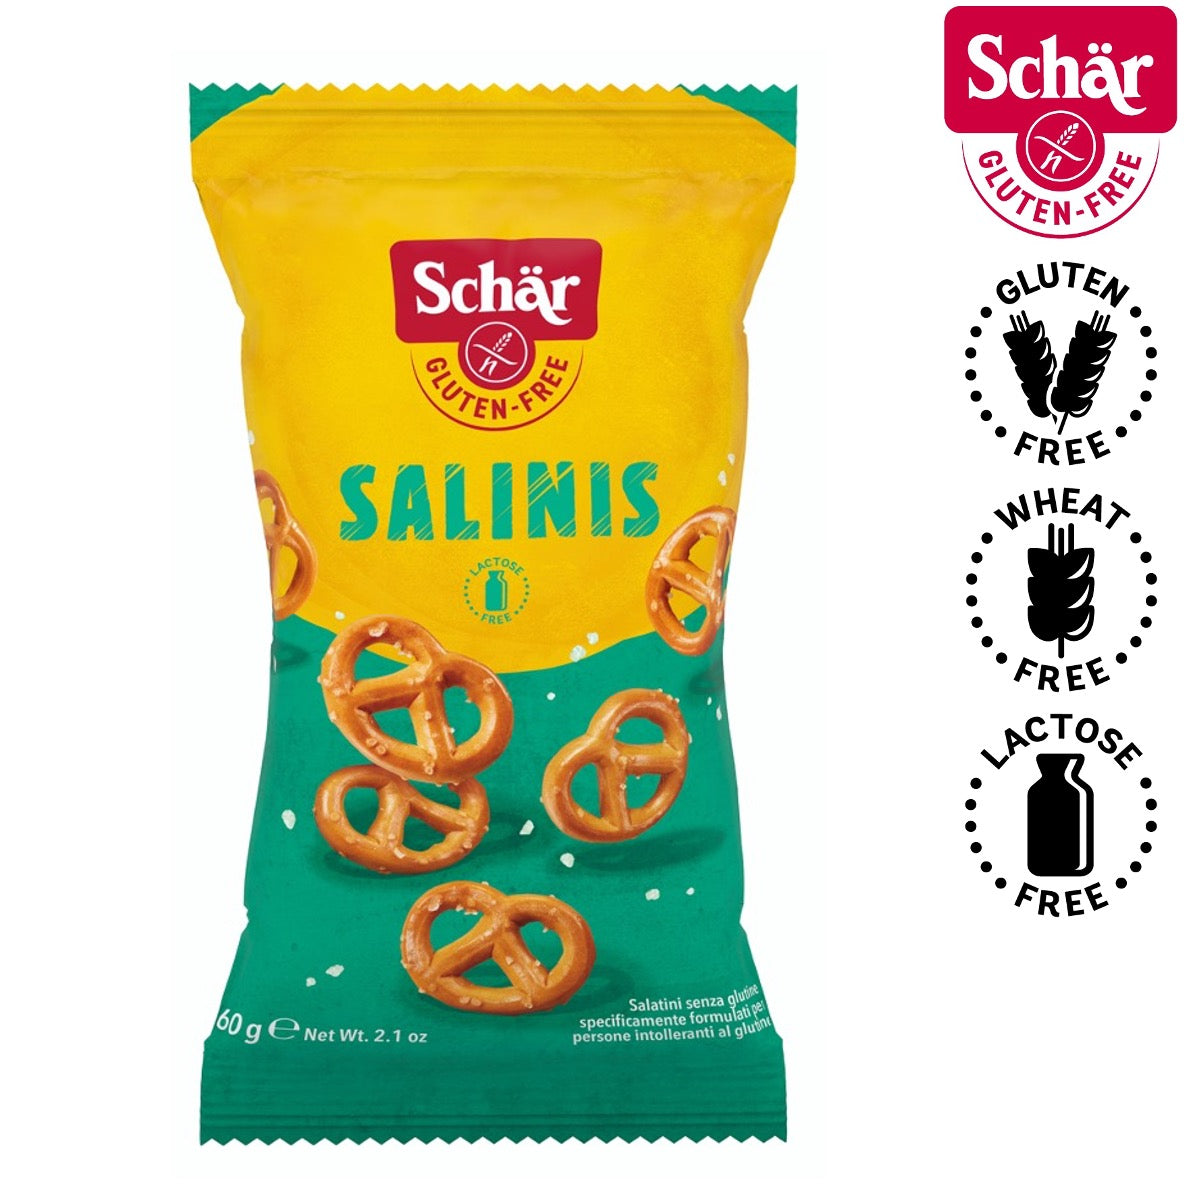 Schar Salinis! Mini Salted Pretzels, Gluten Free - 60gr